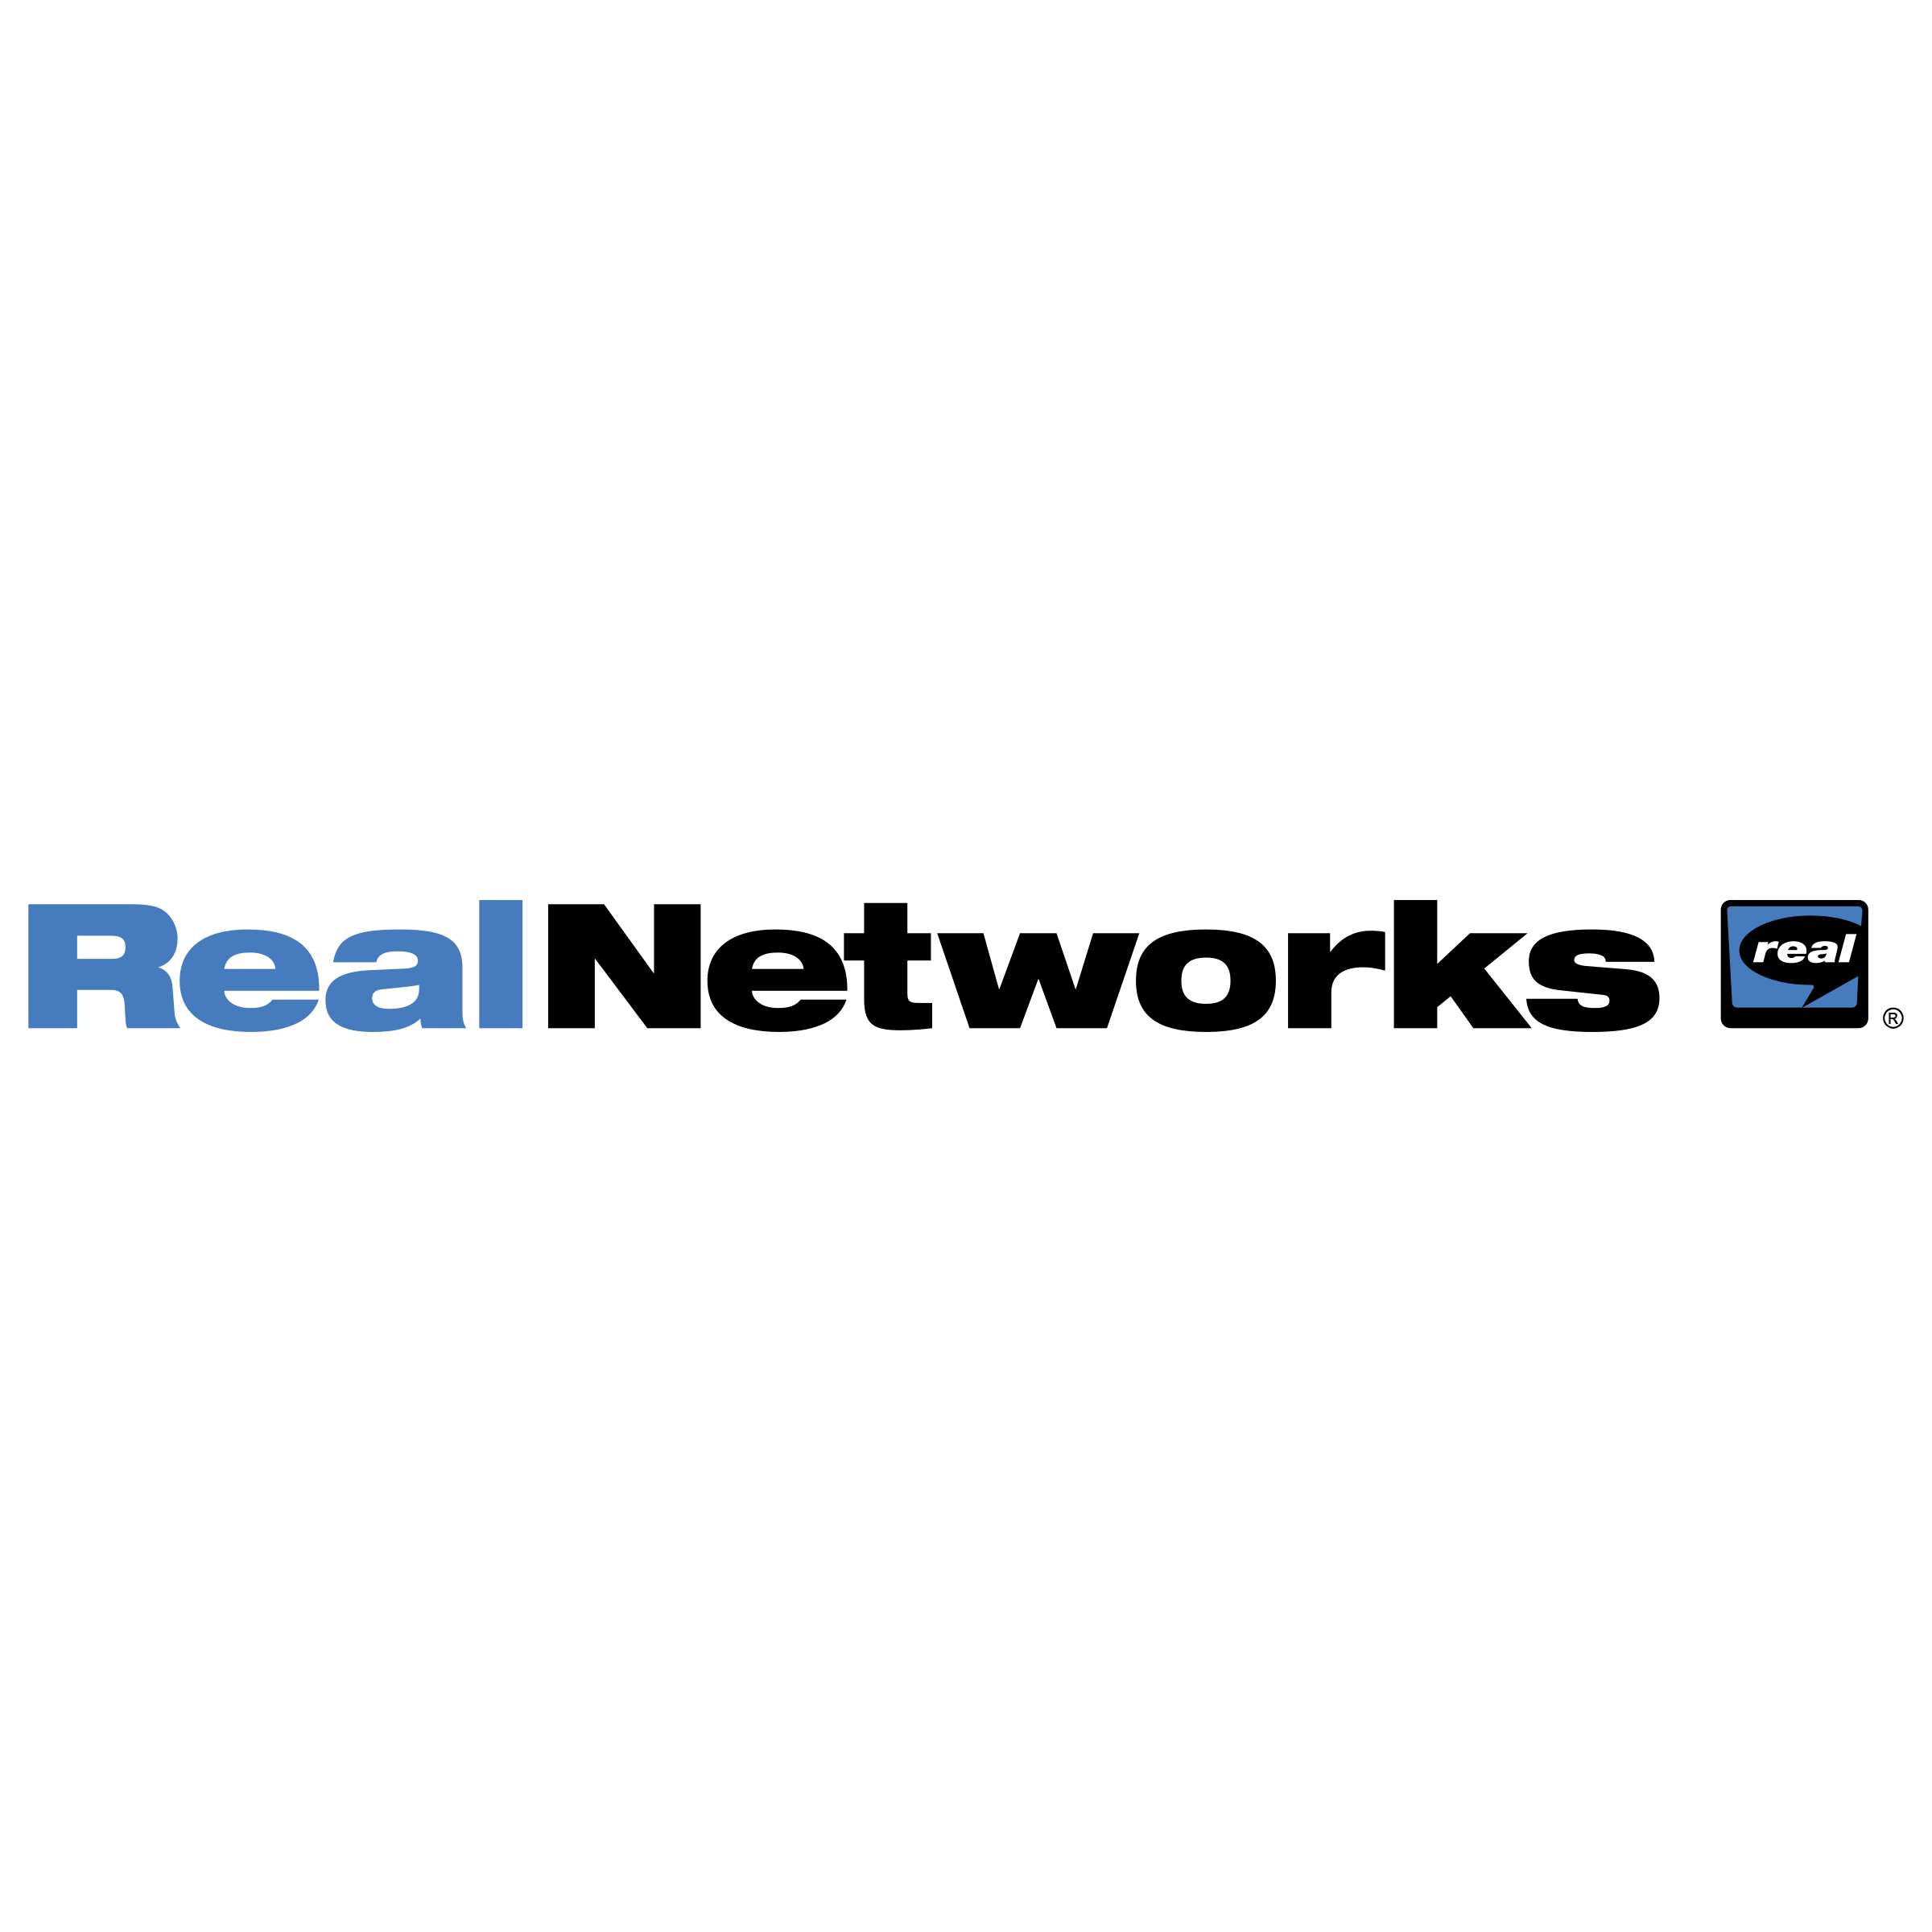 RealNetworks Logo - RealNetworks Logo PNG Transparent & SVG Vector - Freebie Supply